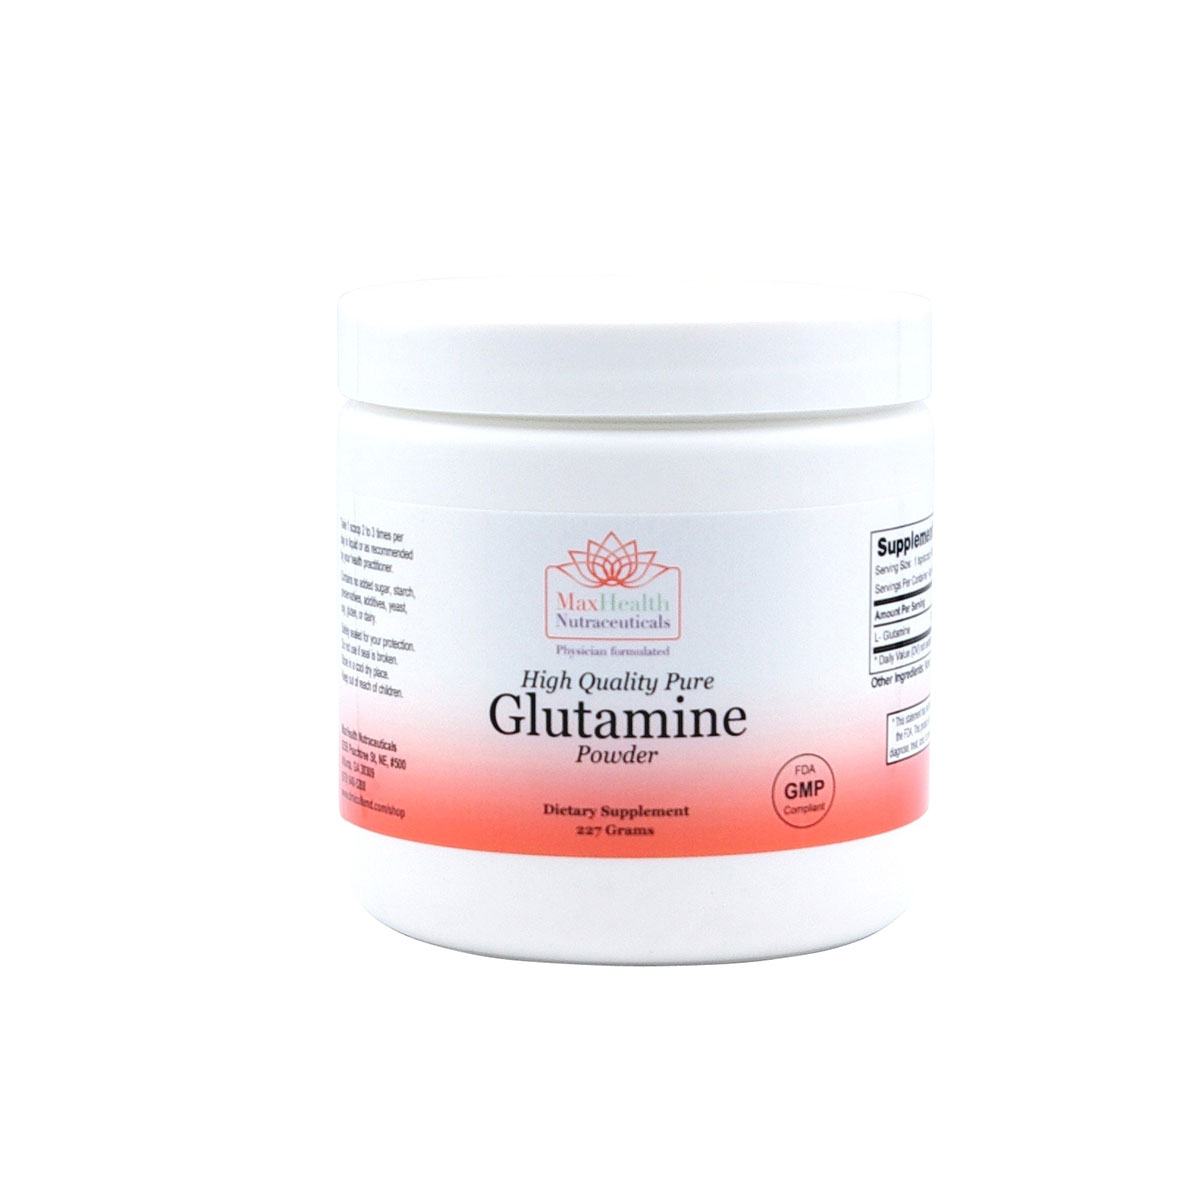 11High Quality Pure Glutamine Powder